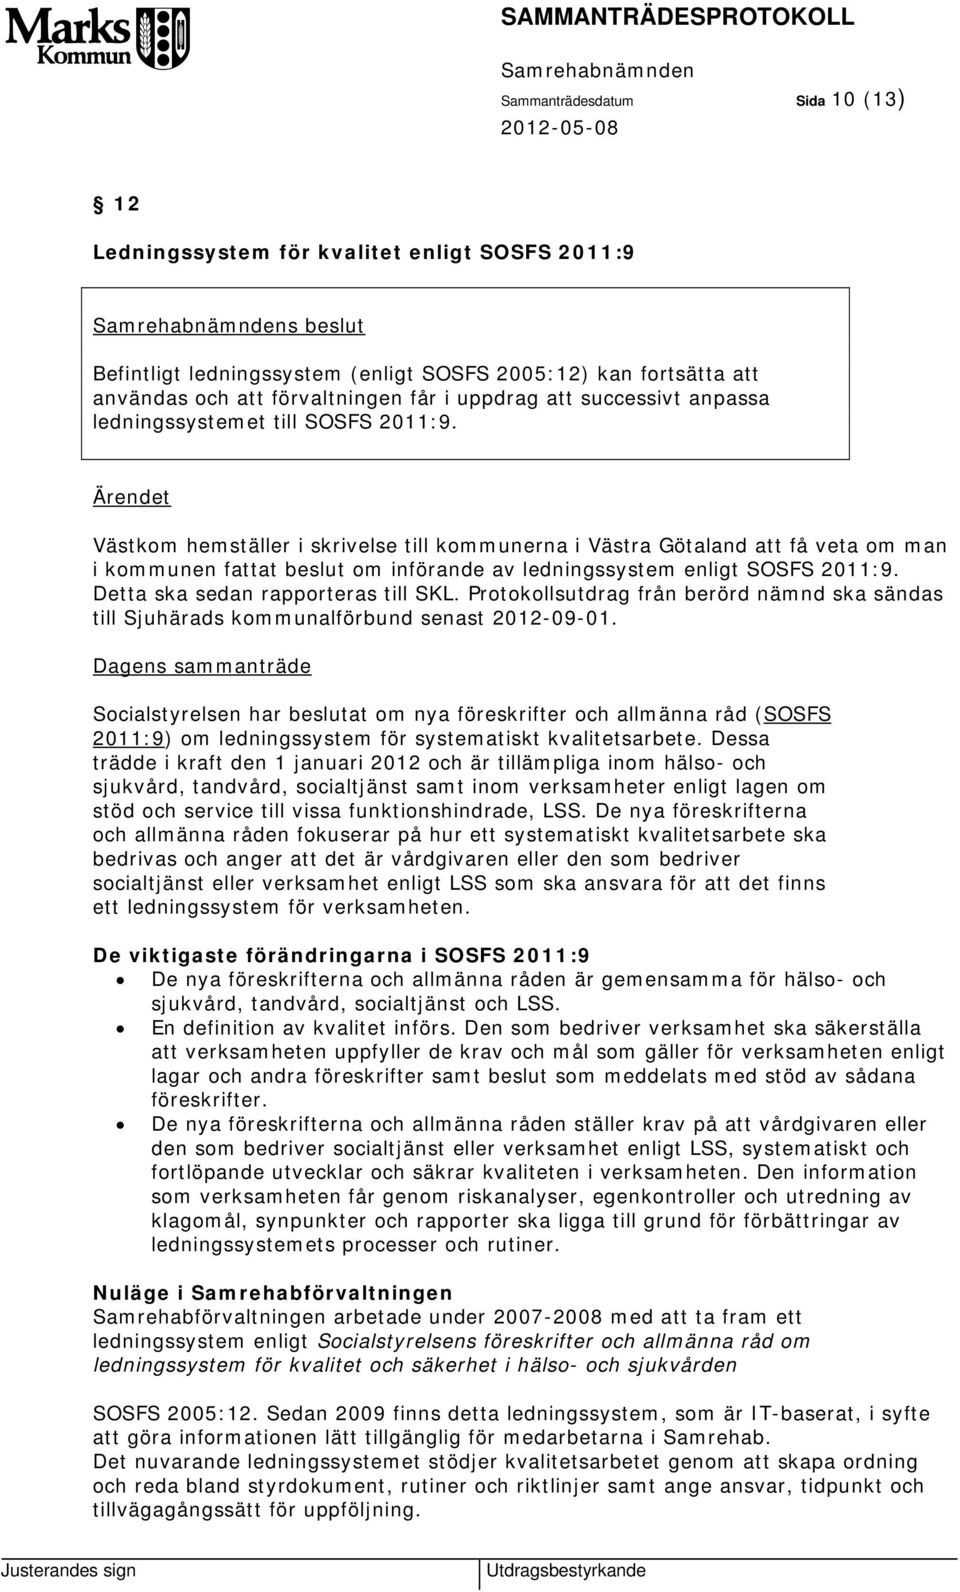 Västkom hemställer i skrivelse till kommunerna i Västra Götaland att få veta om man i kommunen fattat beslut om införande av ledningssystem enligt SOSFS 2011:9. Detta ska sedan rapporteras till SKL.